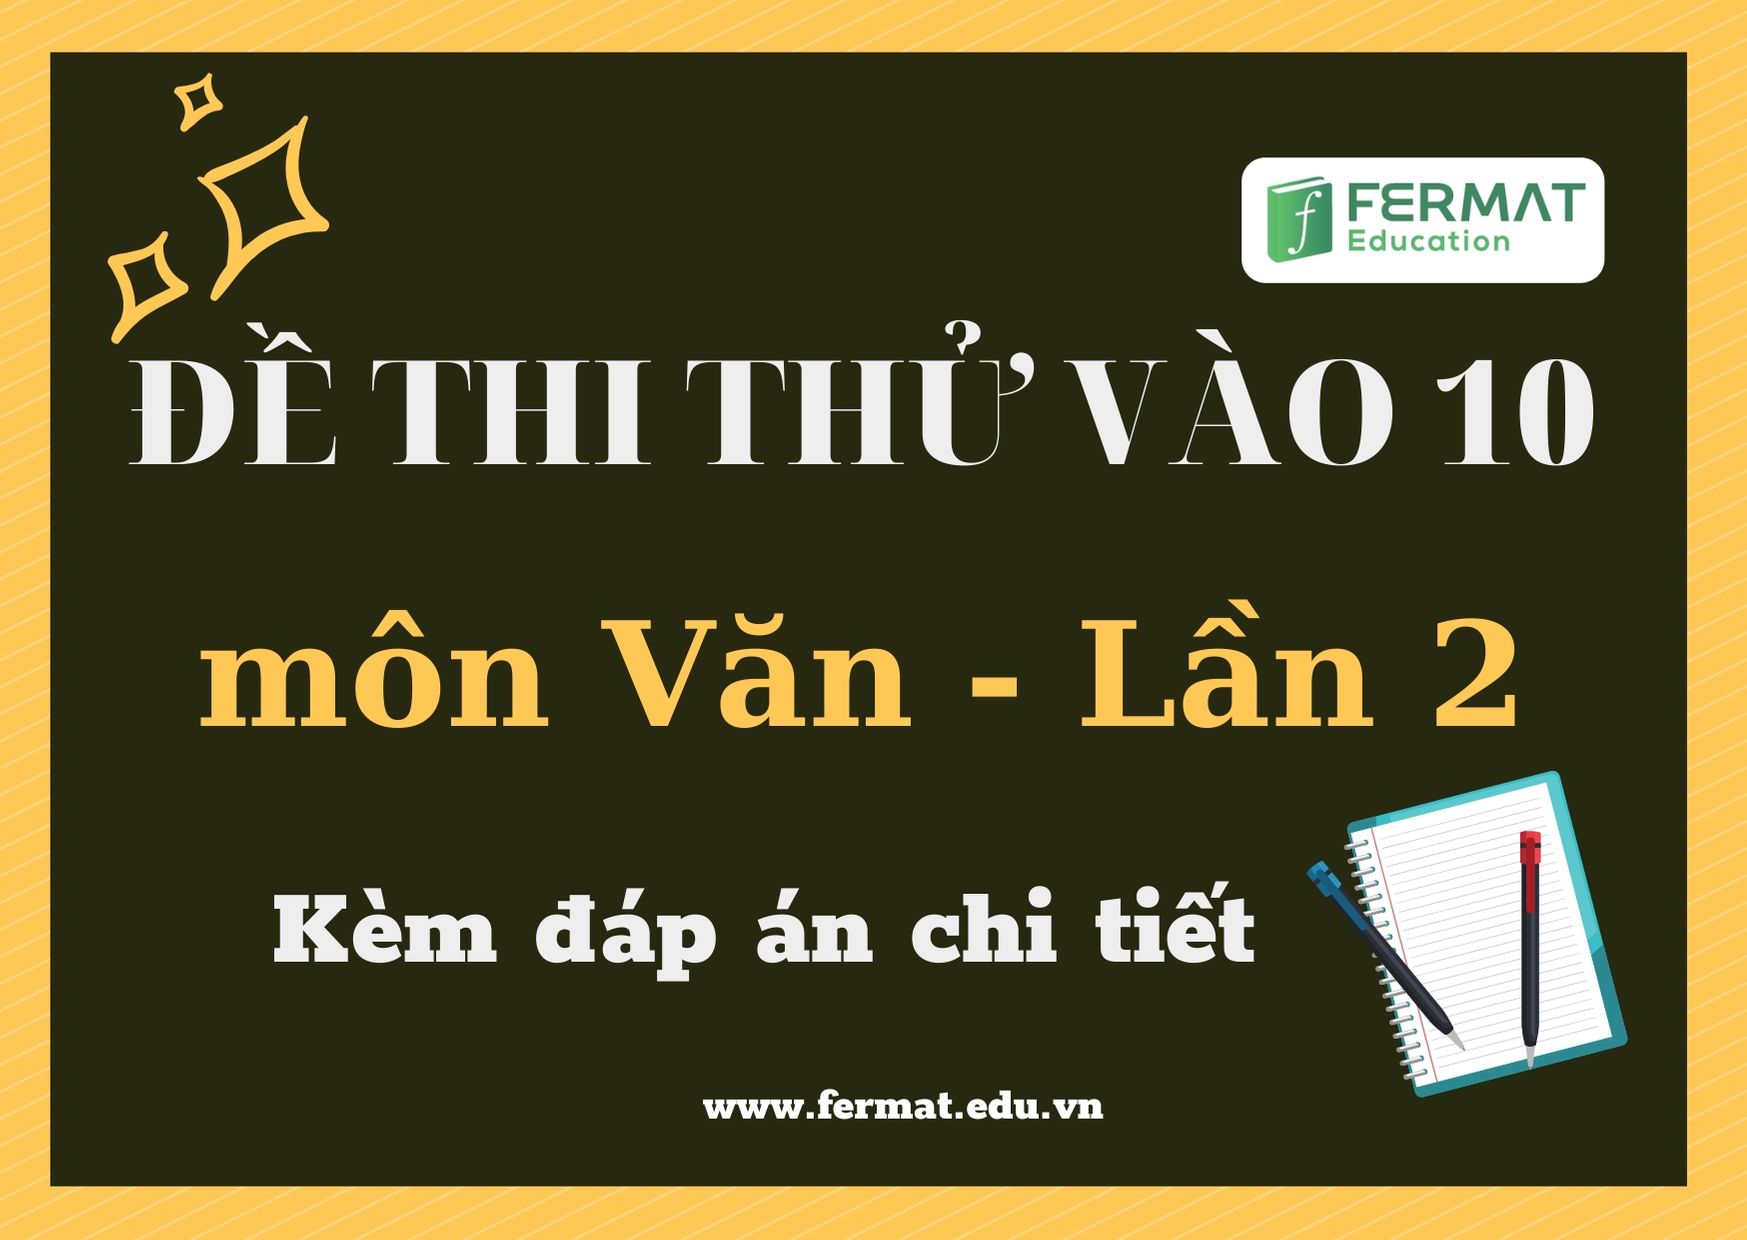 Đề và đáp án thi thử vào 10 lần 2 năm 2020 - môn Văn - Fermat Education